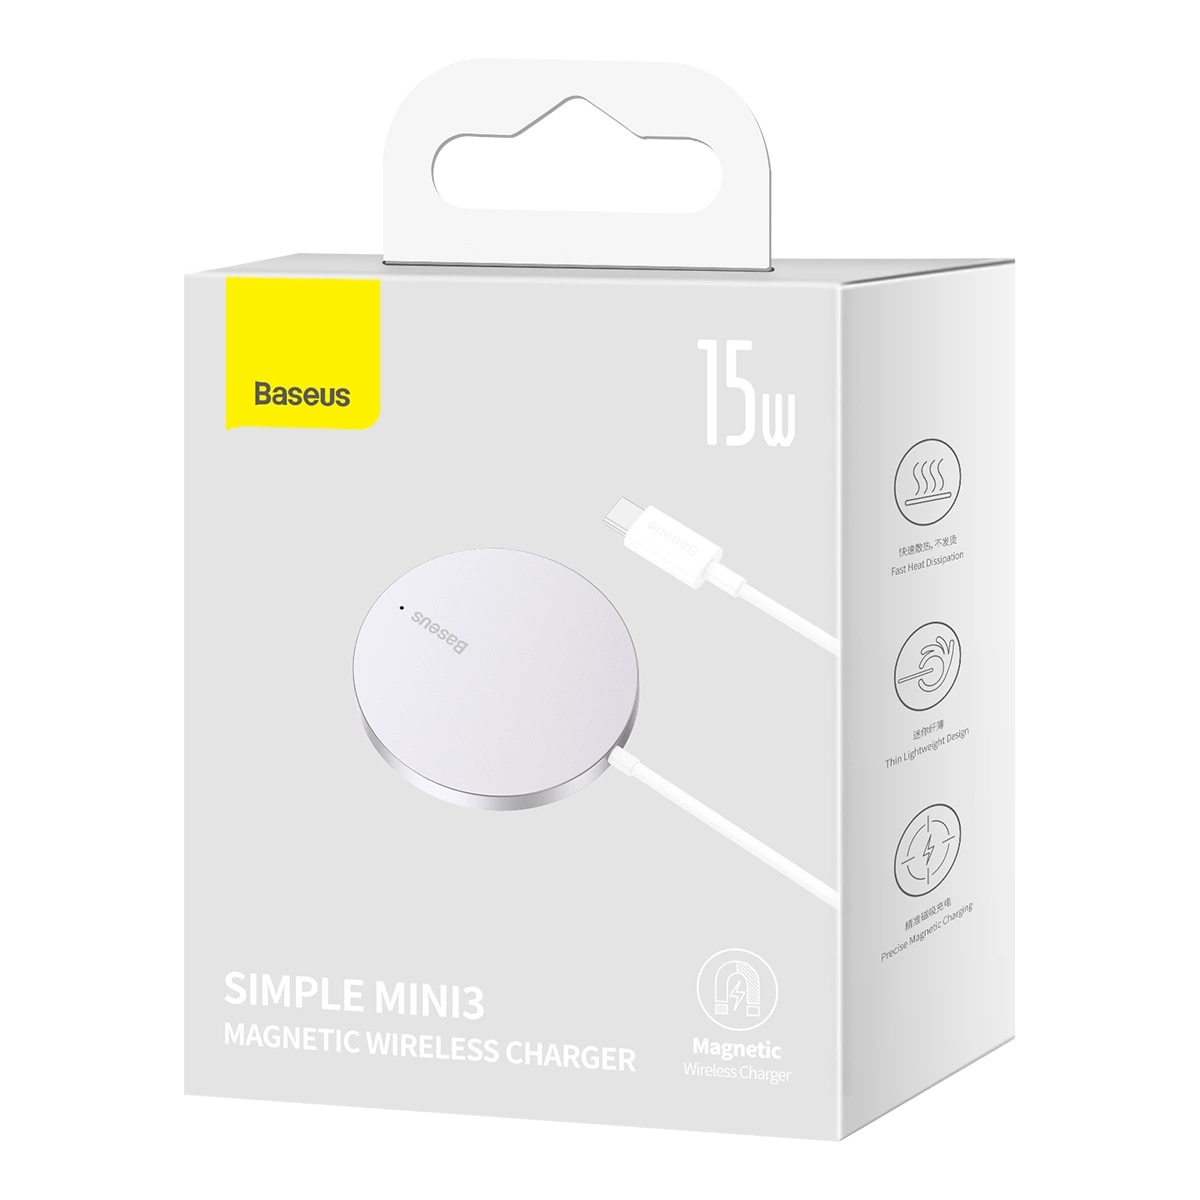 Simple Mini3 Chargeur sans fil MagSafe 15W, argent